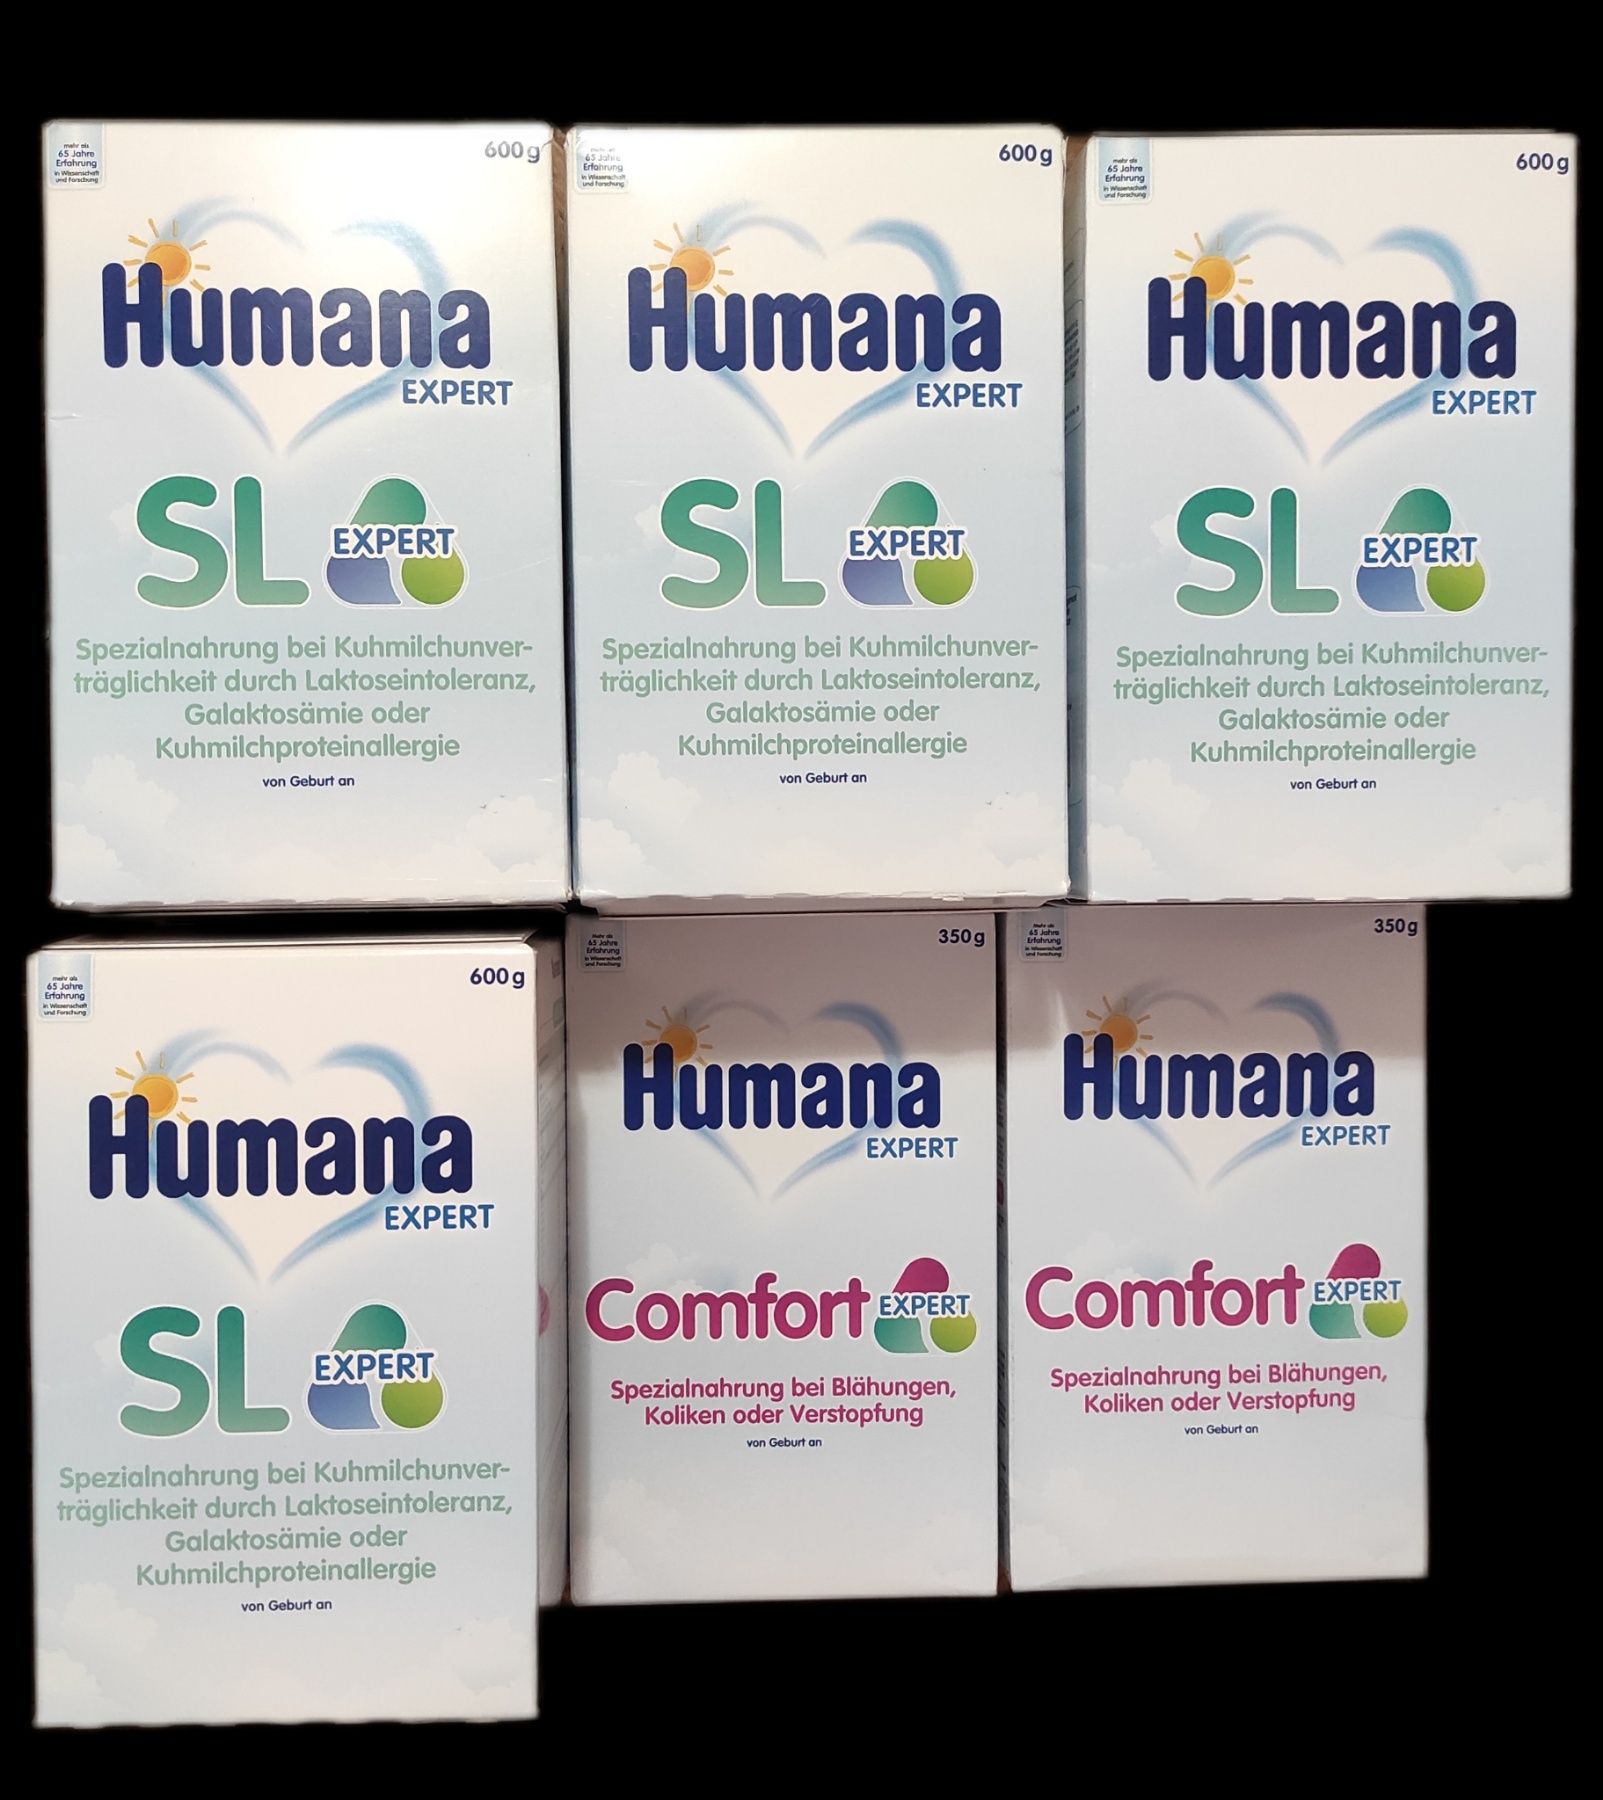 Суміш Humana SL expert 600г.,humana смесь 600g.,humana comfort expert